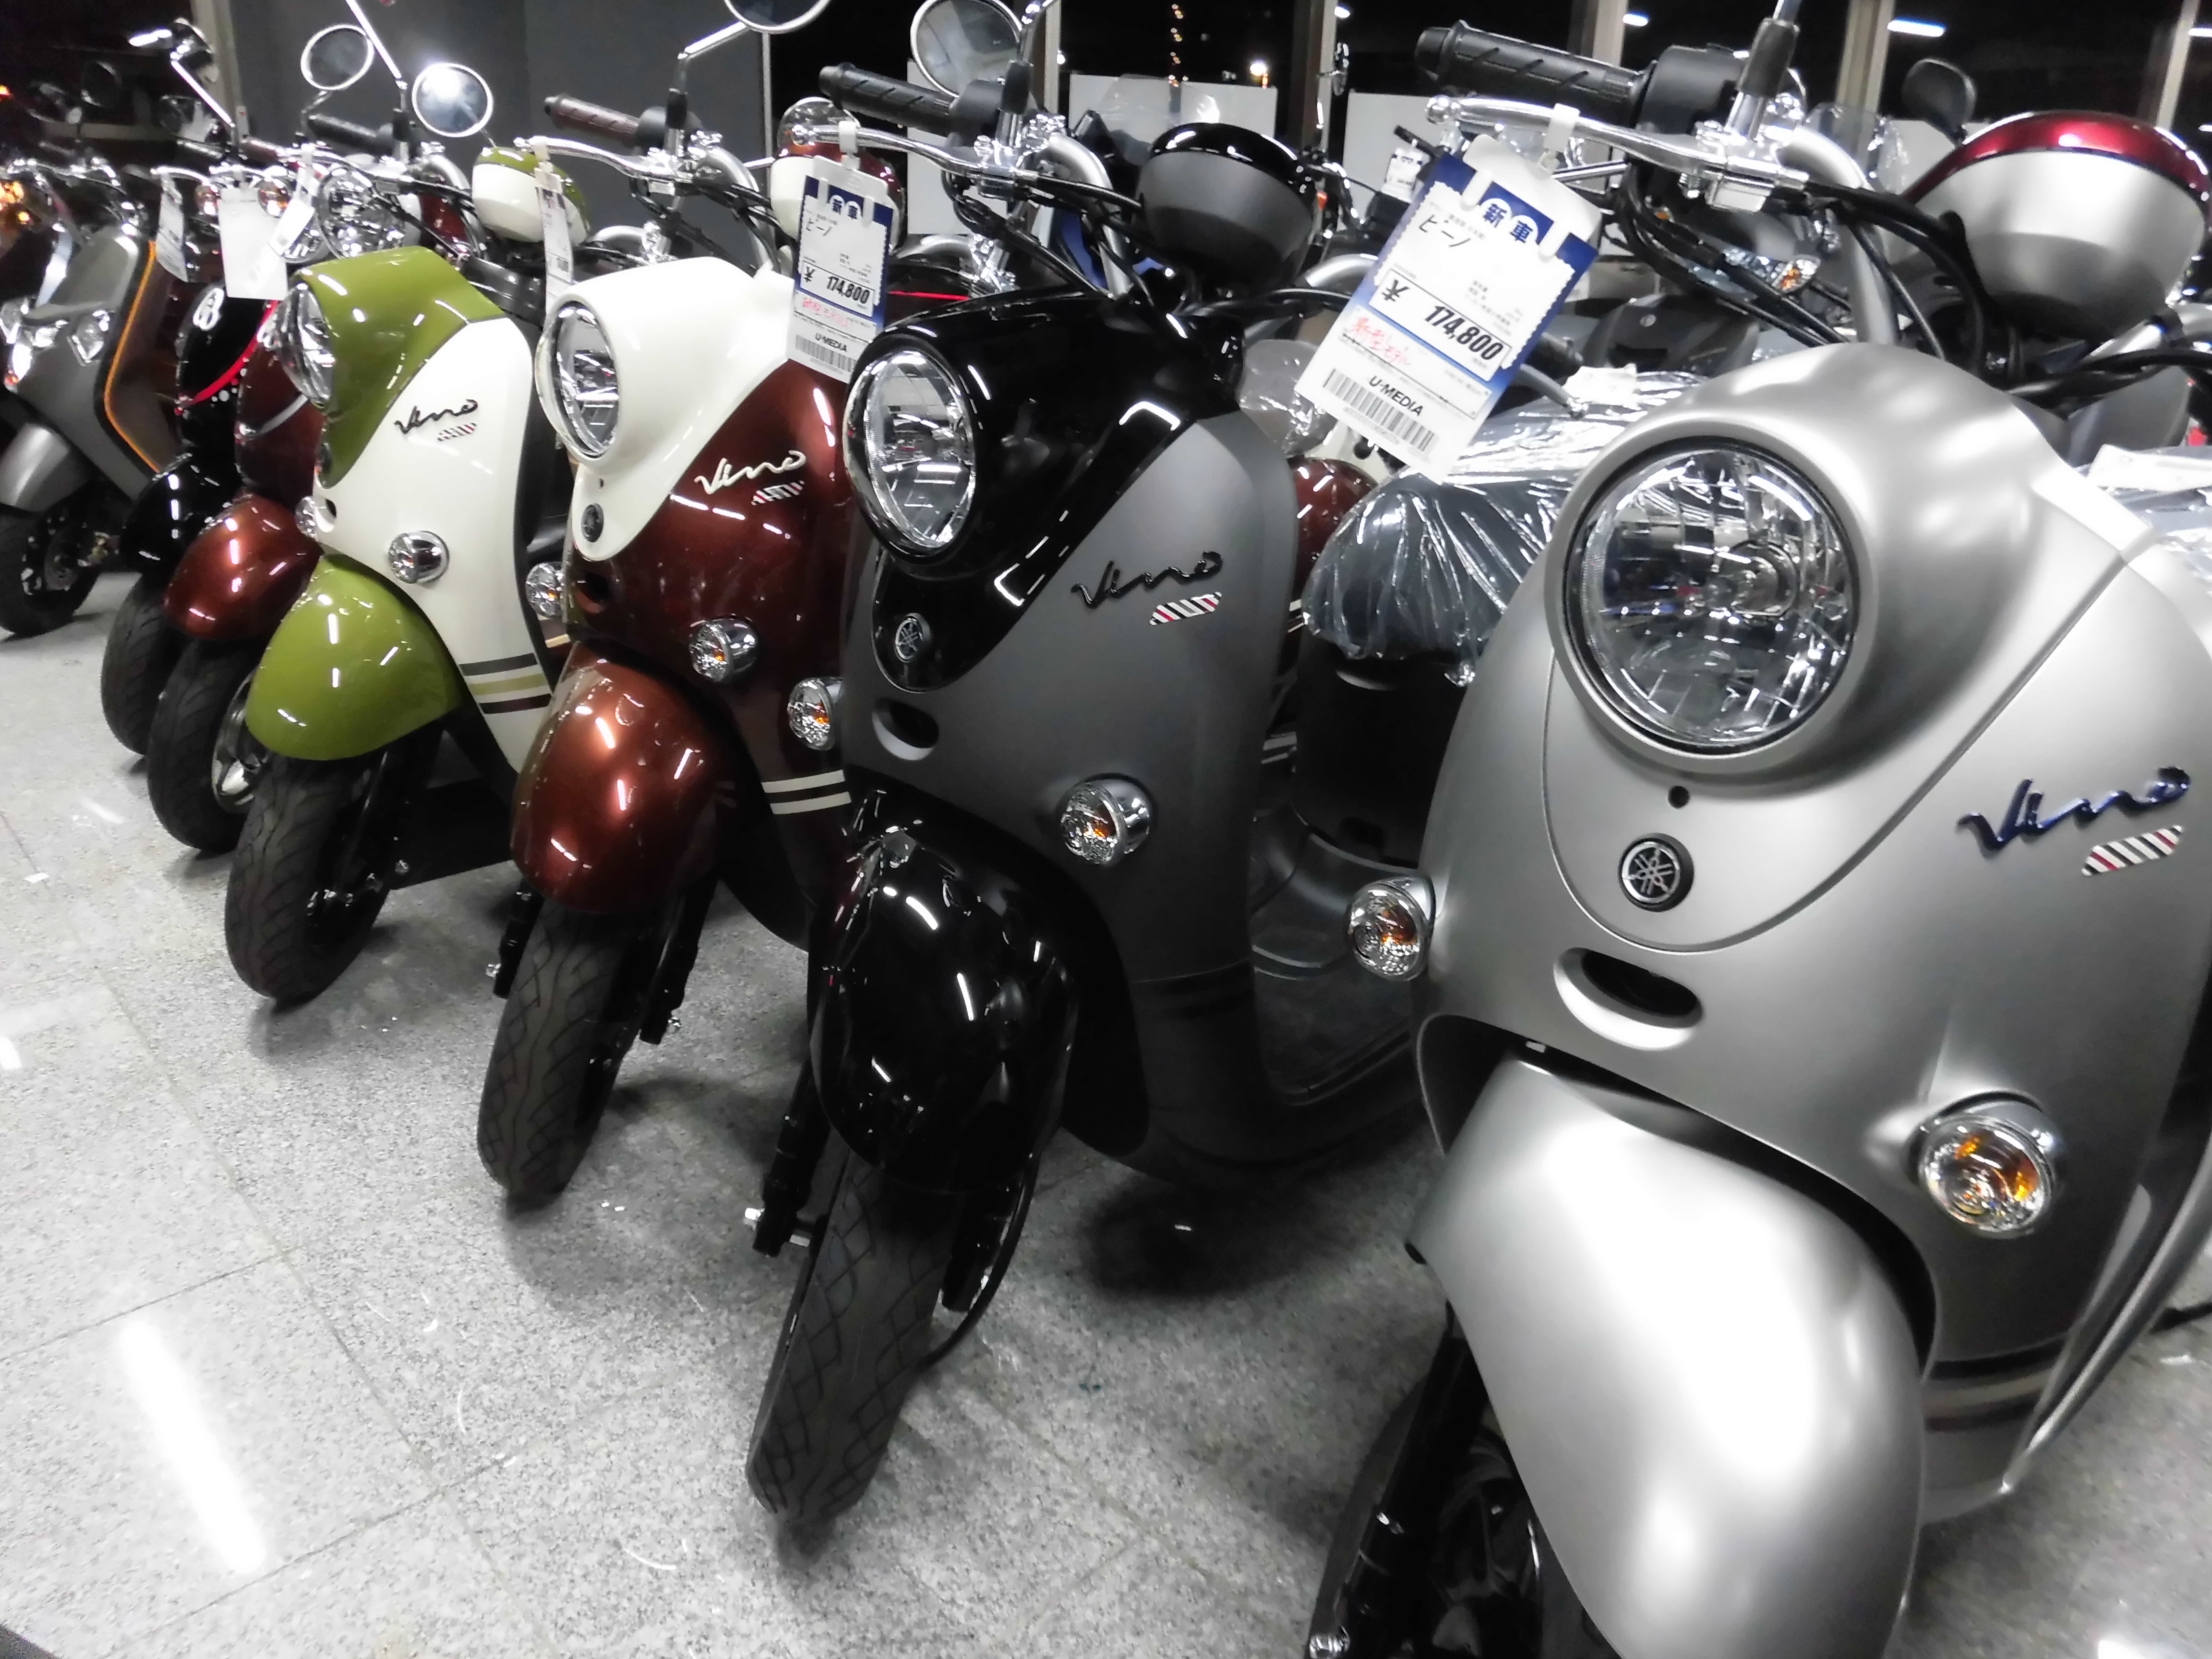 ヤマハ原付大量入庫 最新情報 U Media ユーメディア 中古 バイク 新車バイク探しの決定版 神奈川 東京でバイク探すならユーメディア